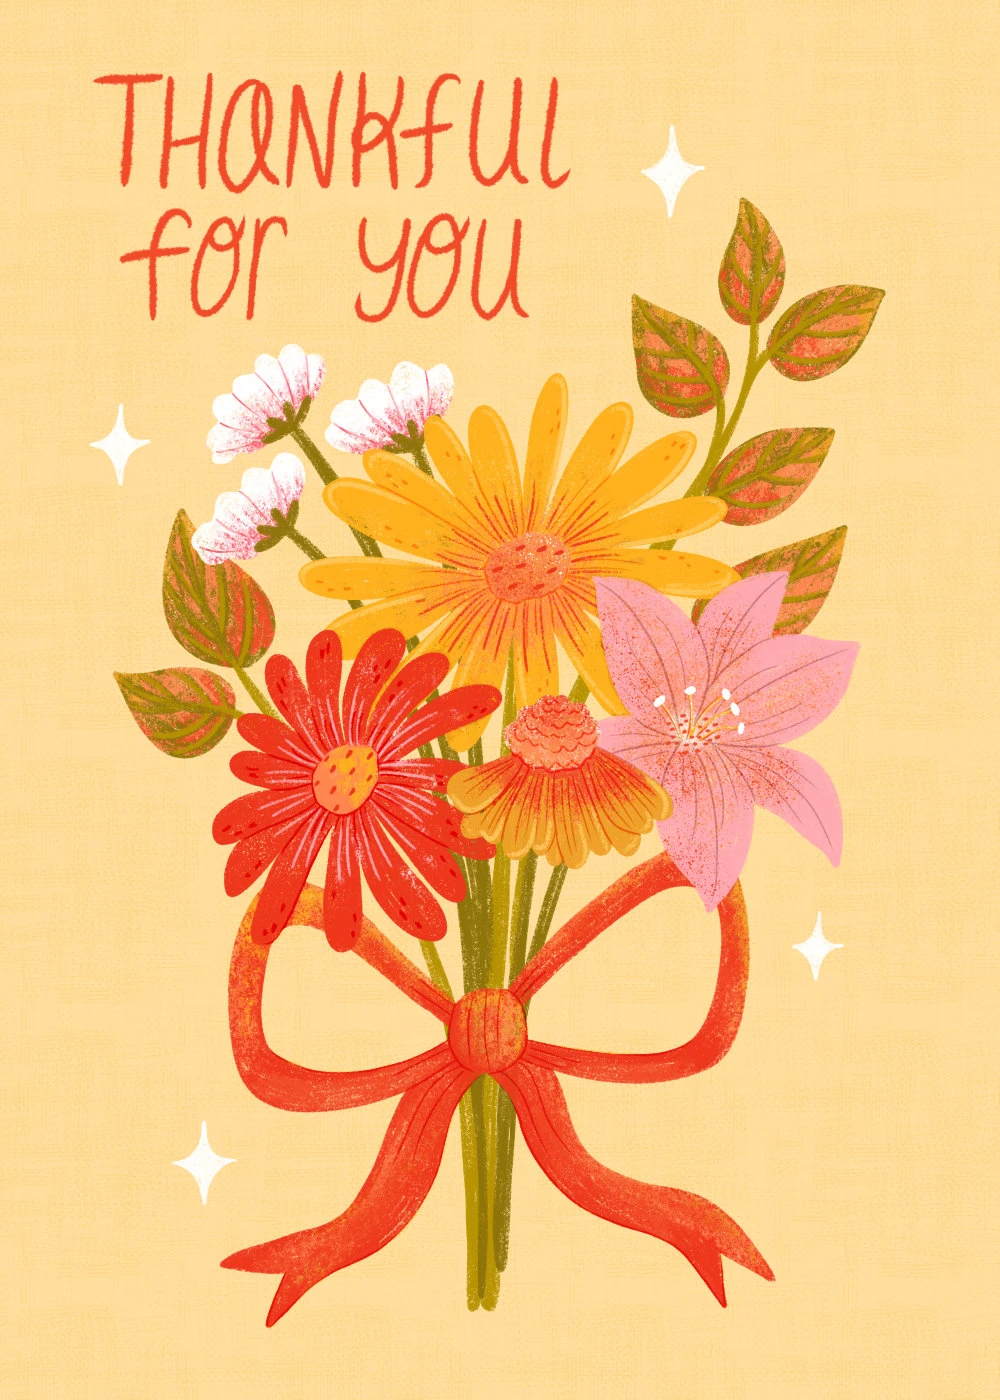 218-webthankful-for-youflower-bouquet-17043018389364.jpg